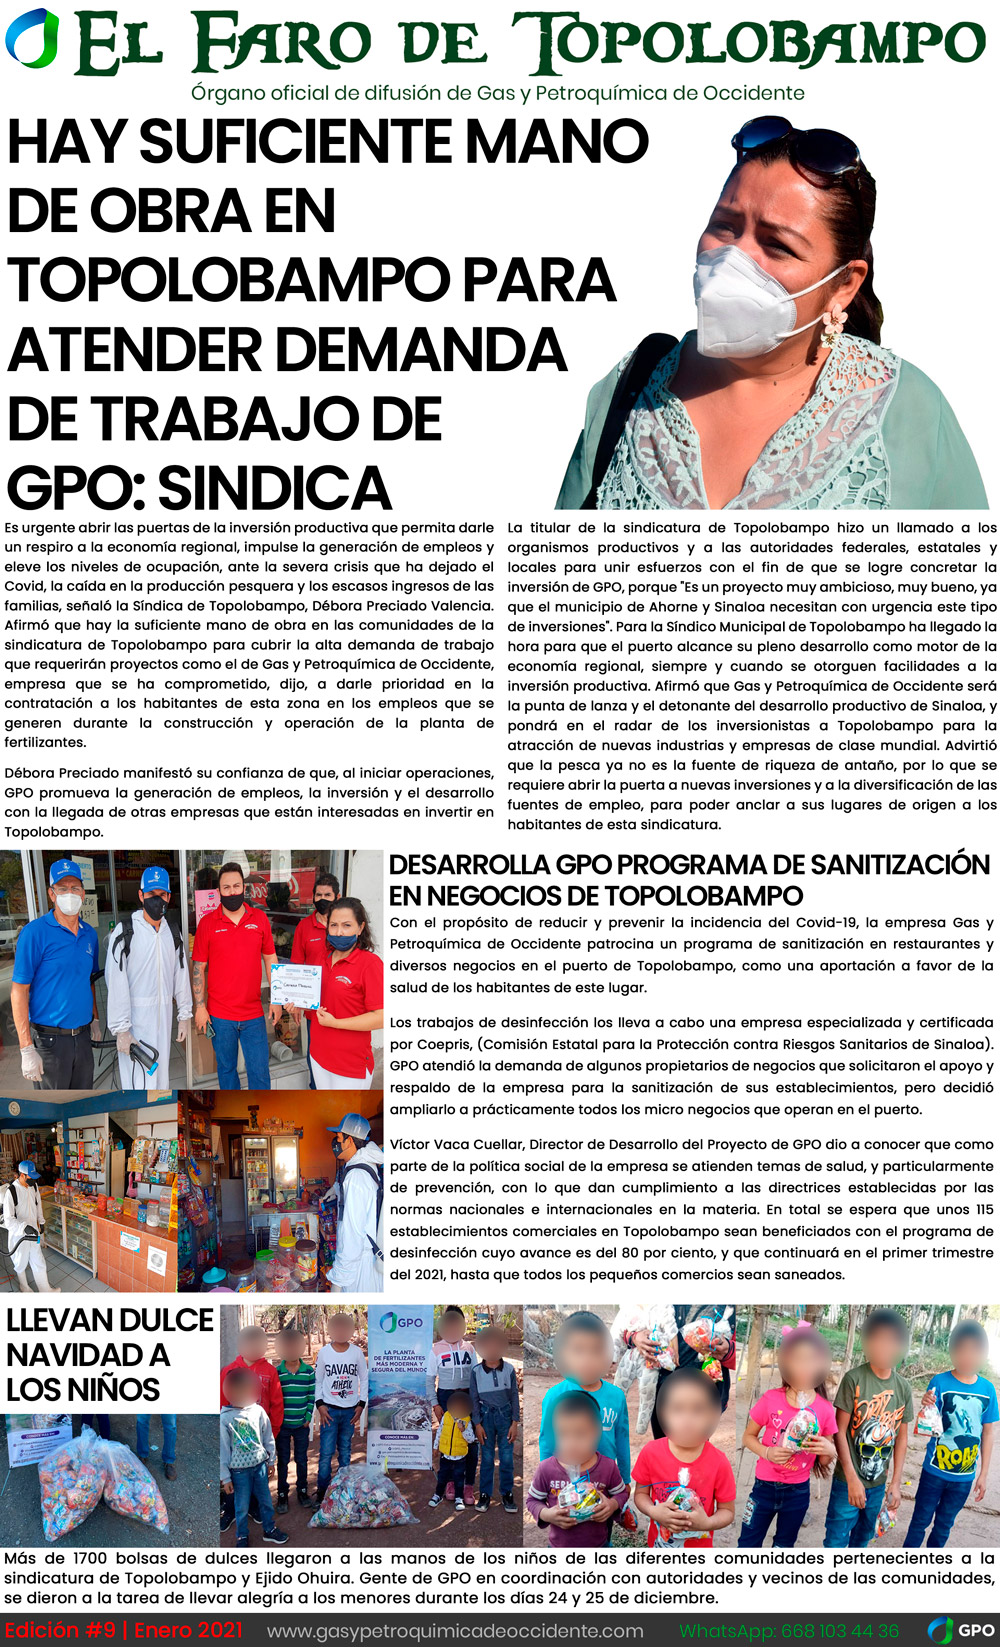 GPO - El Faro de Topolobampo - A - Español - Enero 2021